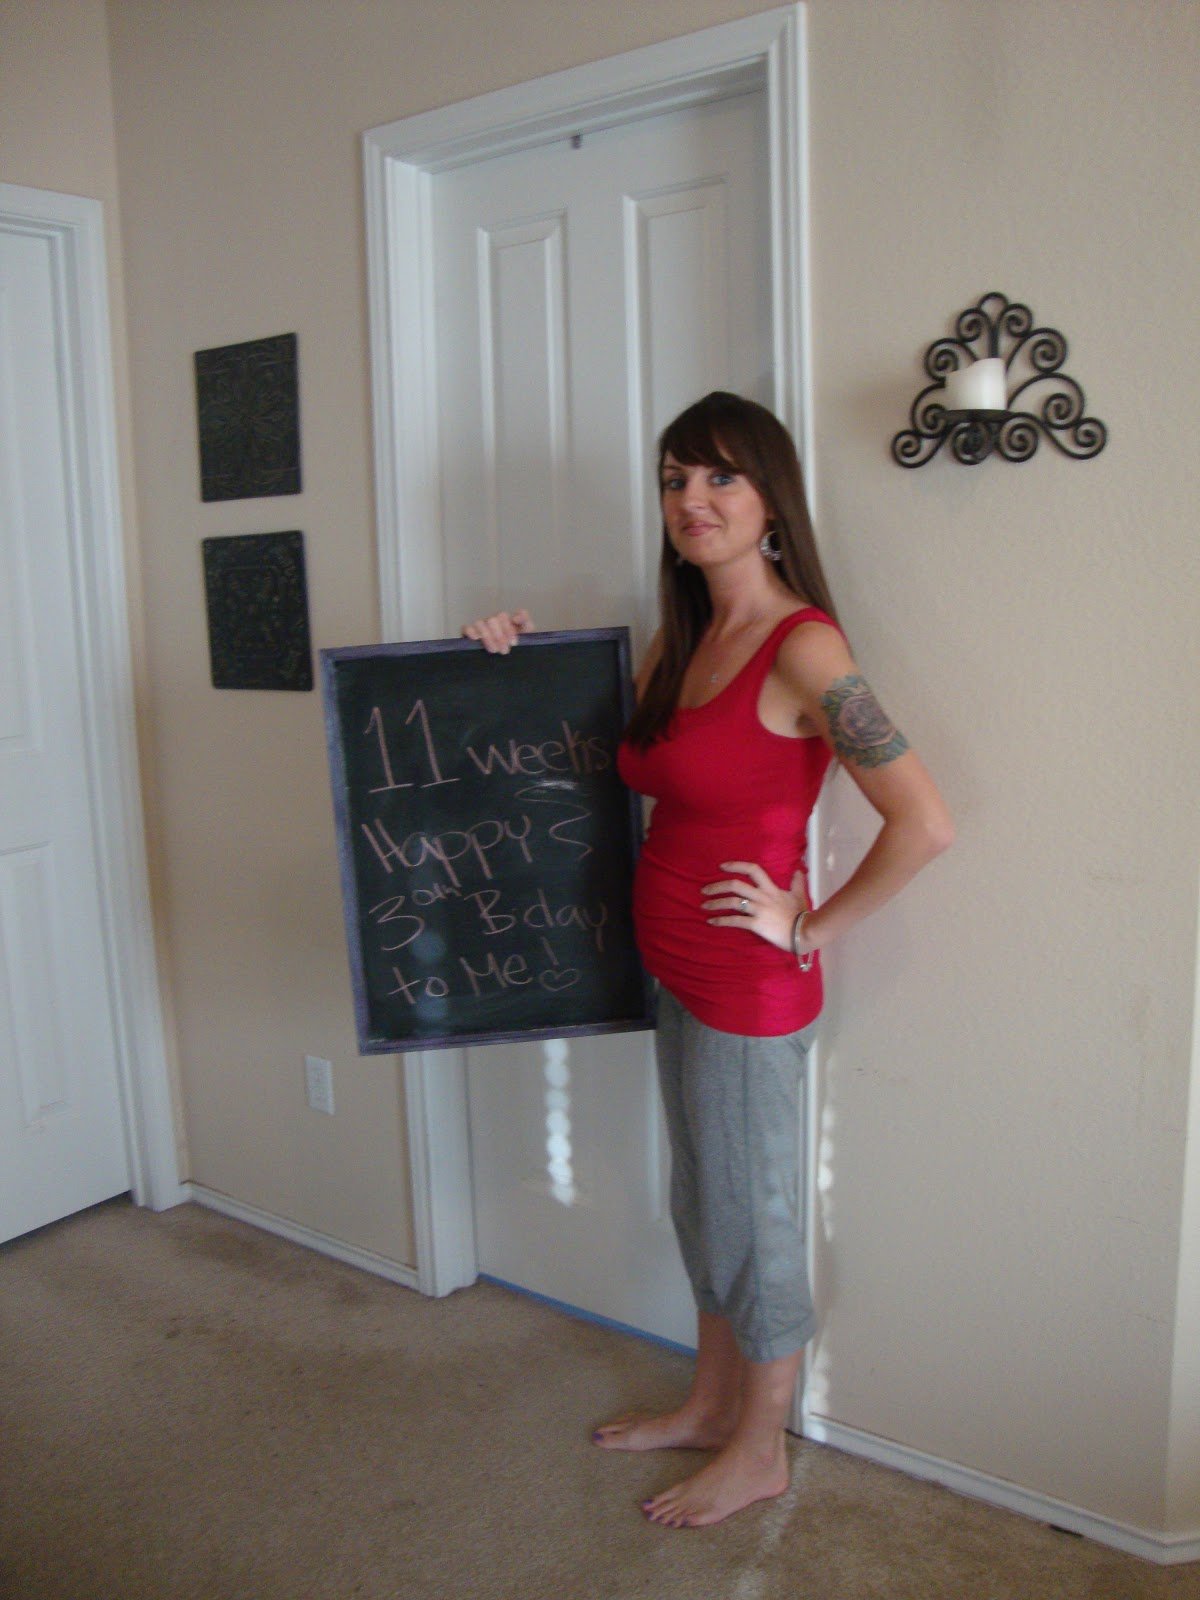 Amici Bello: 11 weeks pregnant